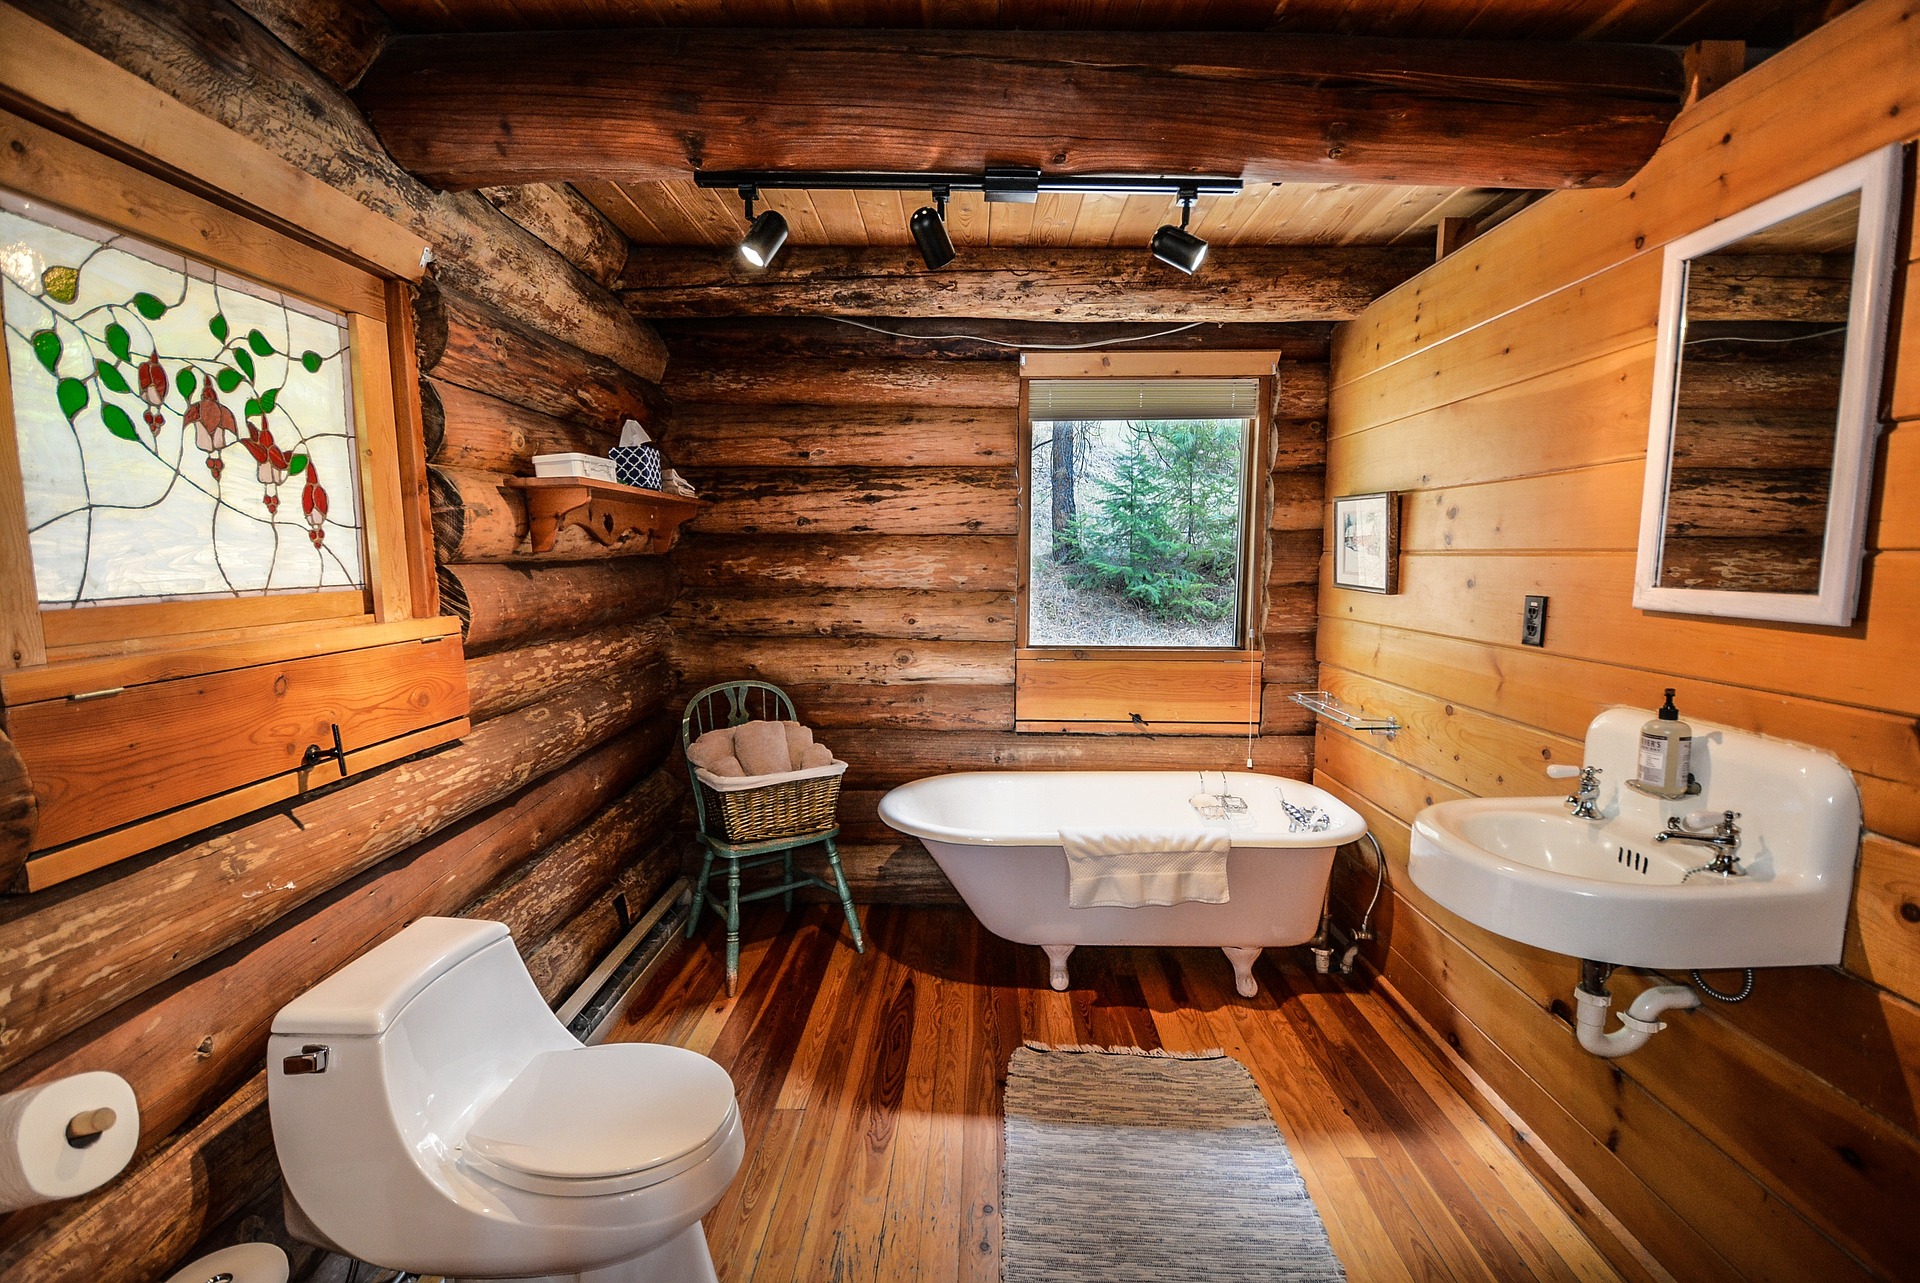 New bath fixture log cabin bathroom.